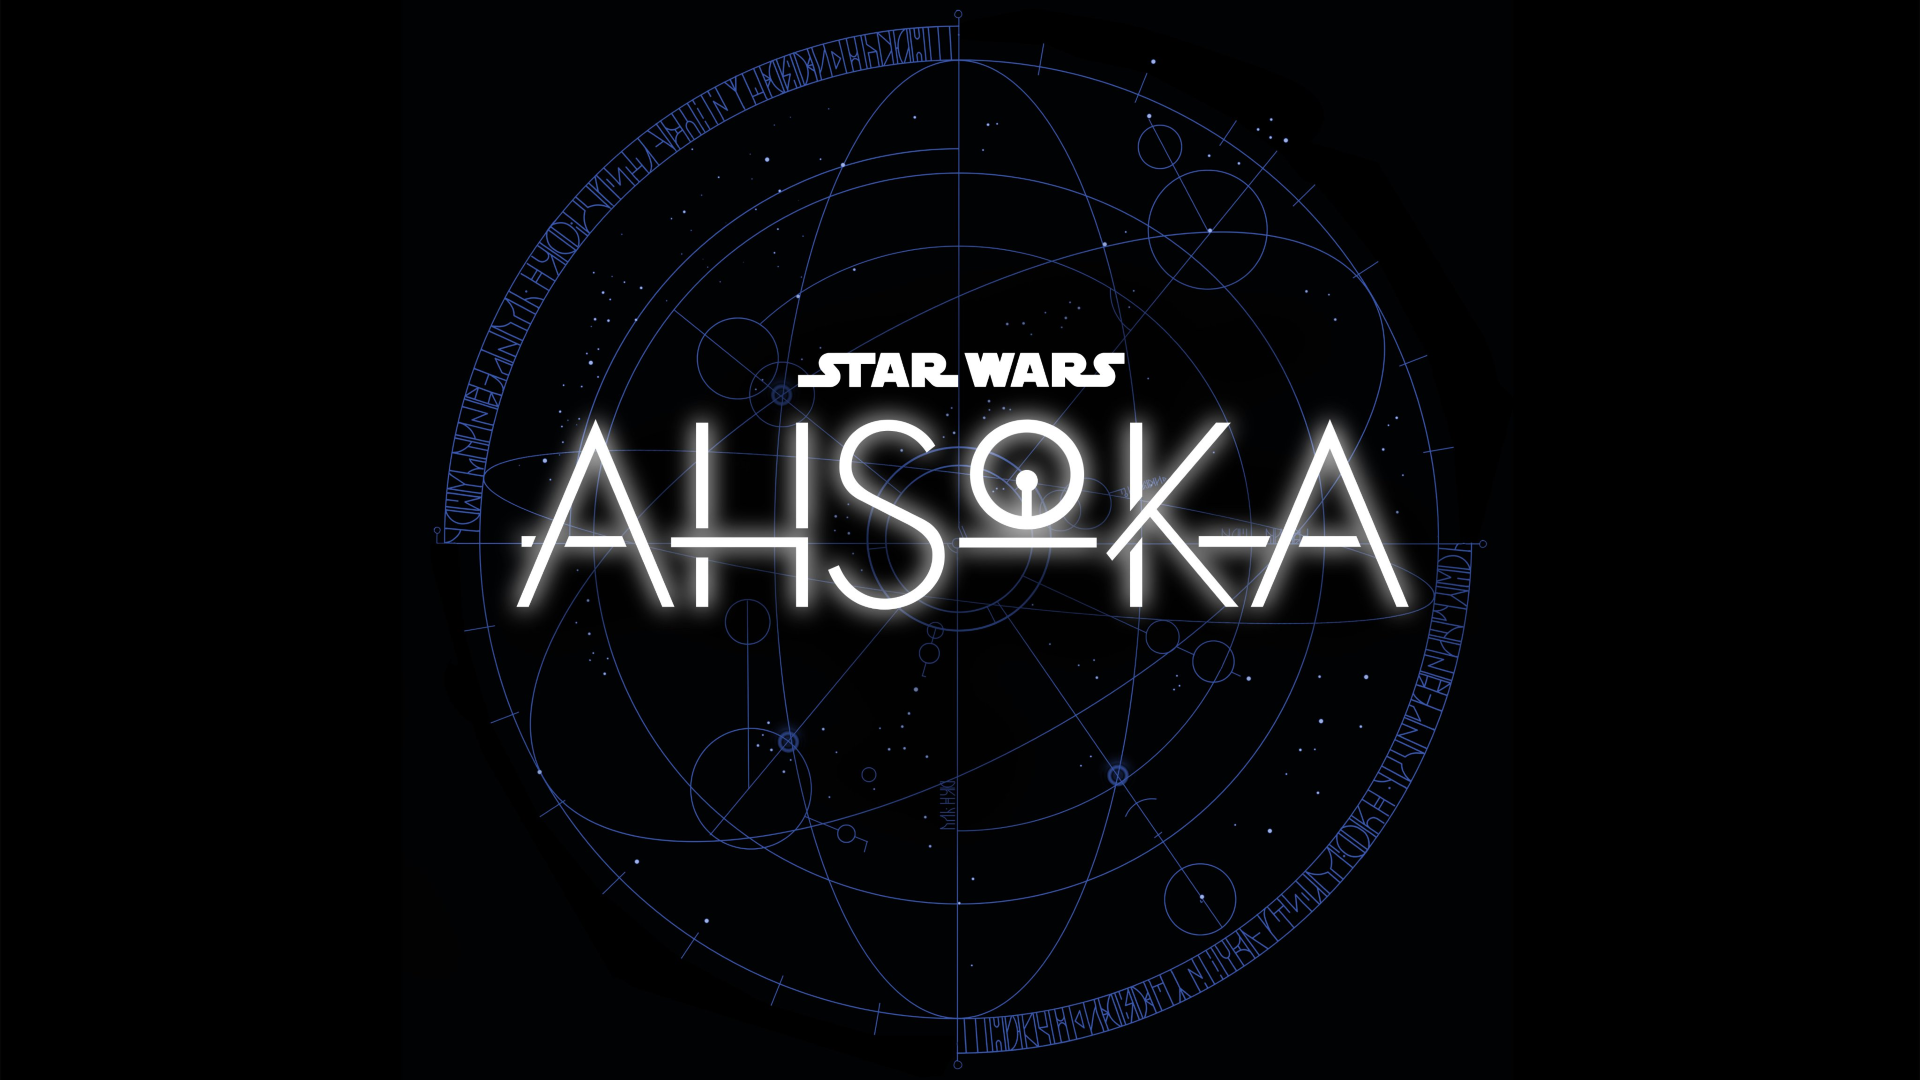 Star Wars: Ahsoka – ‘Force’ Teaser Trailer